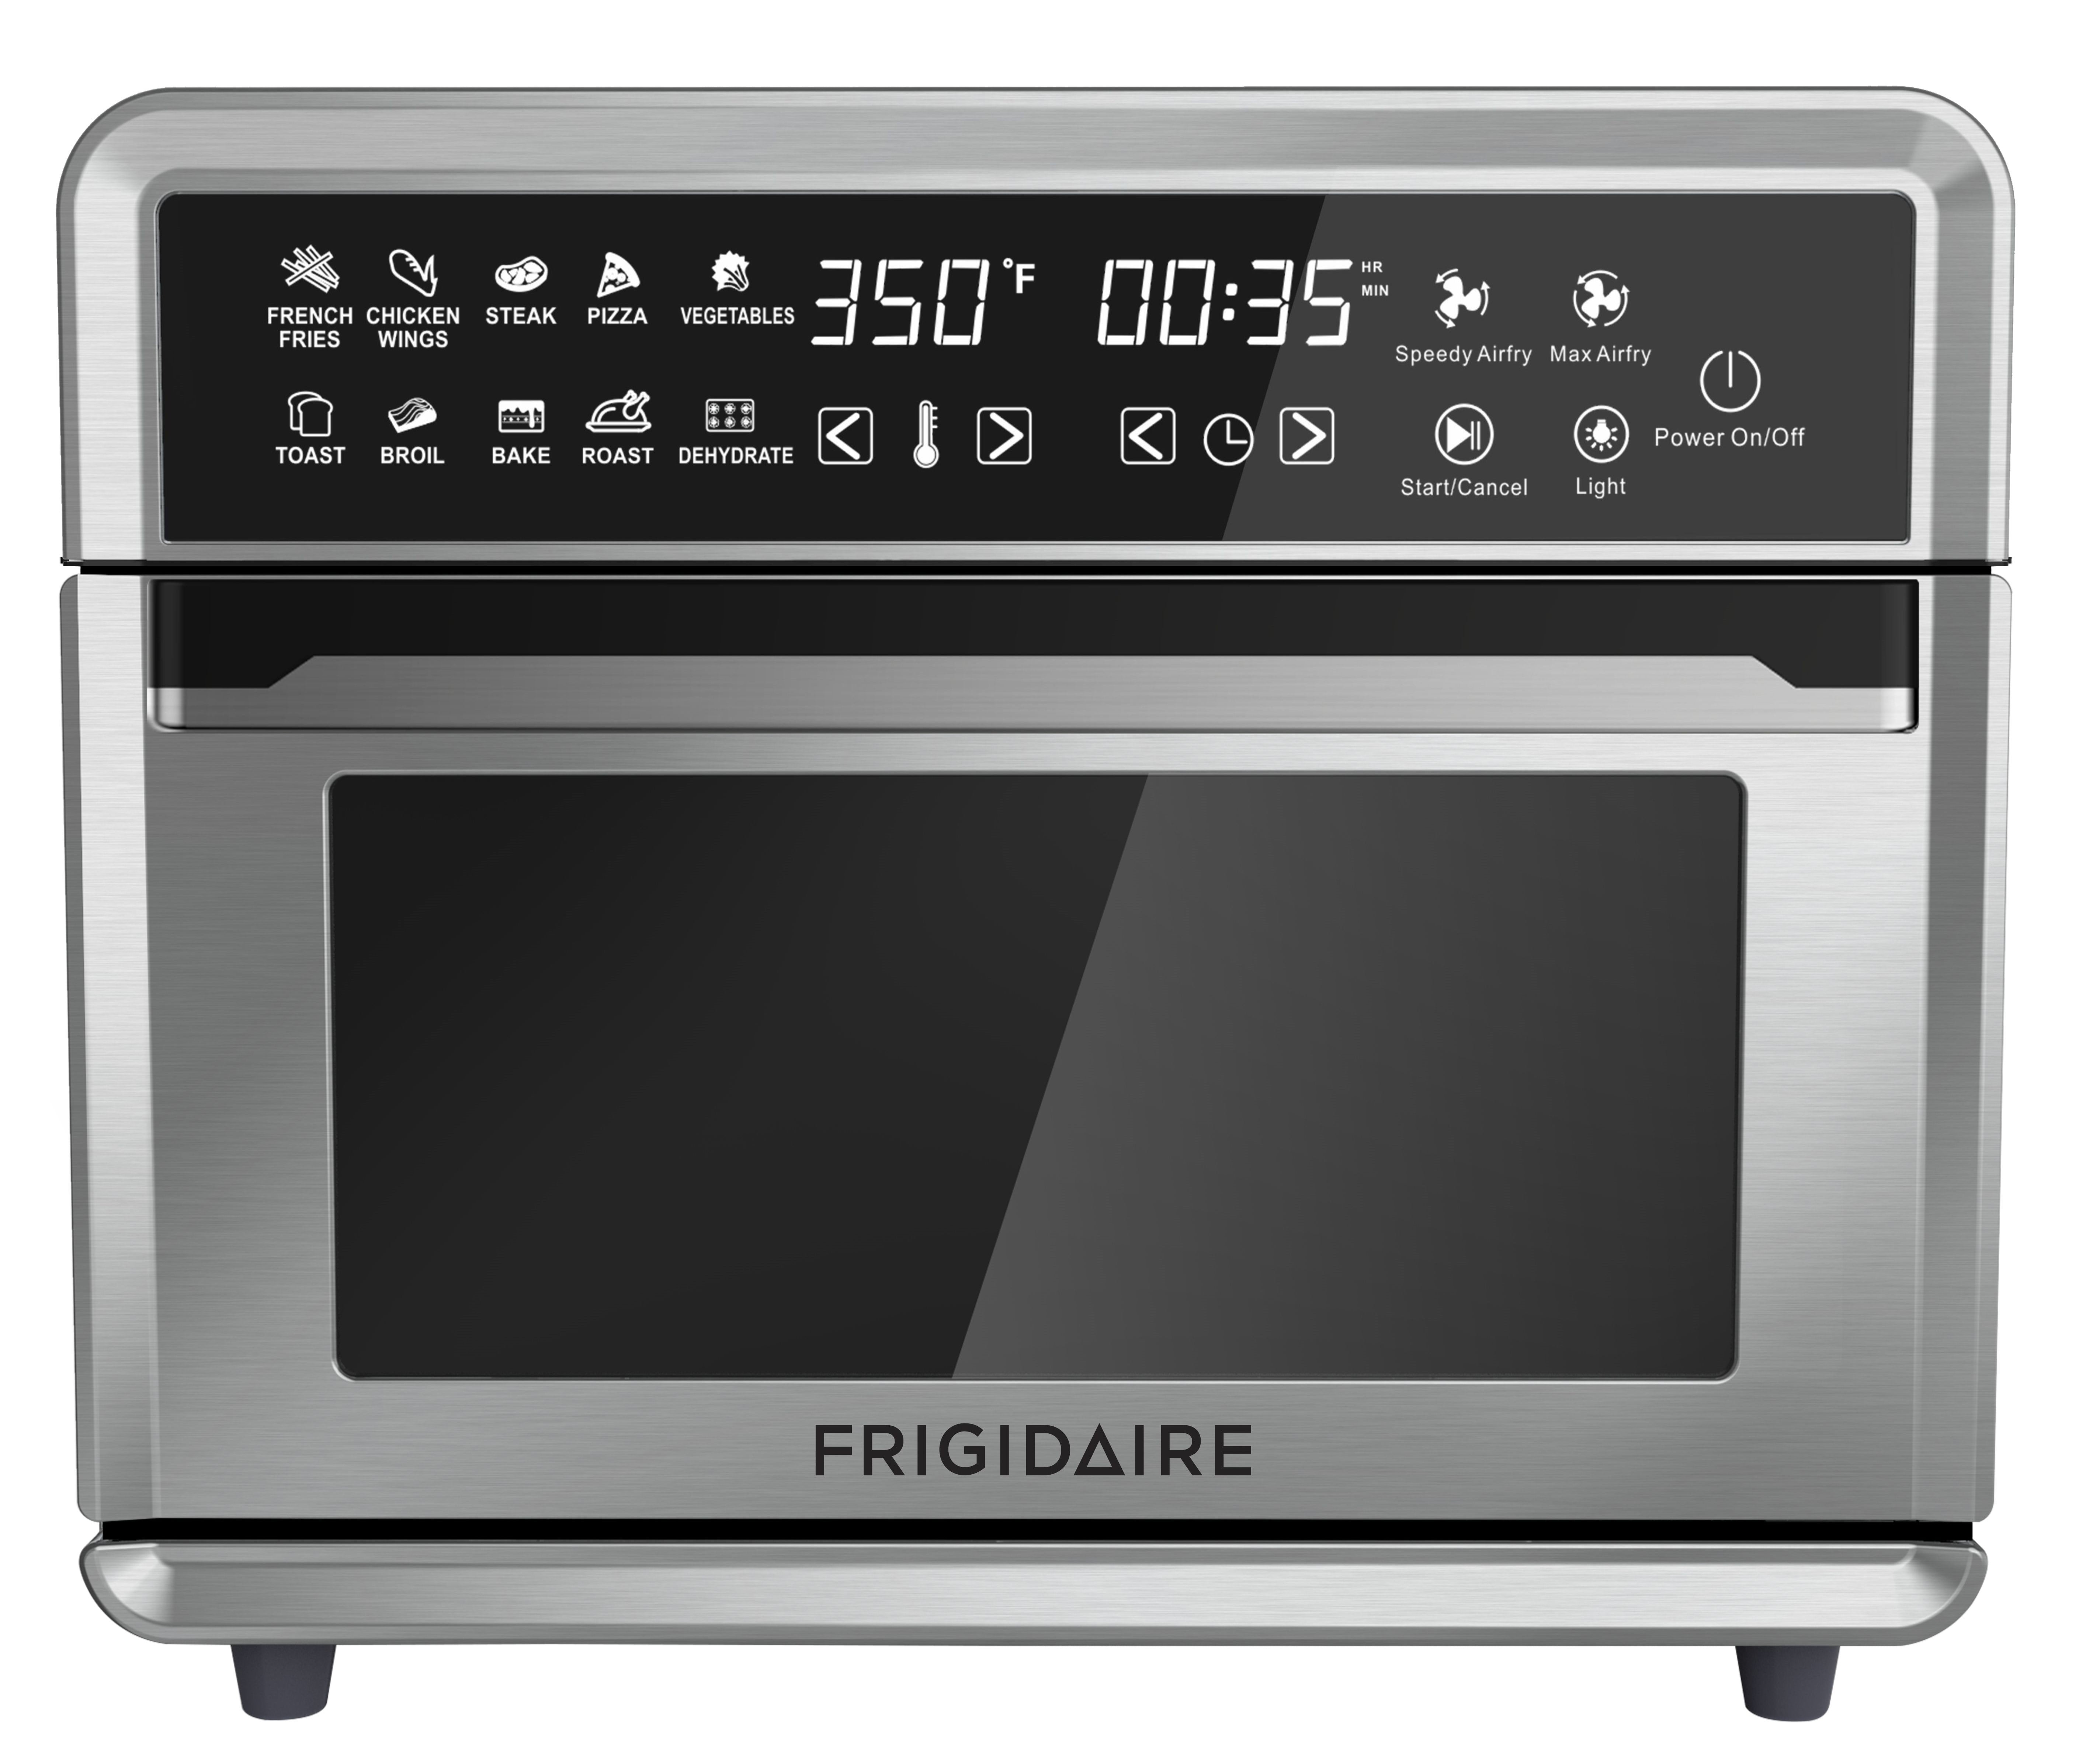 Frigidaire FDAF022 Air Fryer 2 in 1 Oven 220V 240V Not for USA